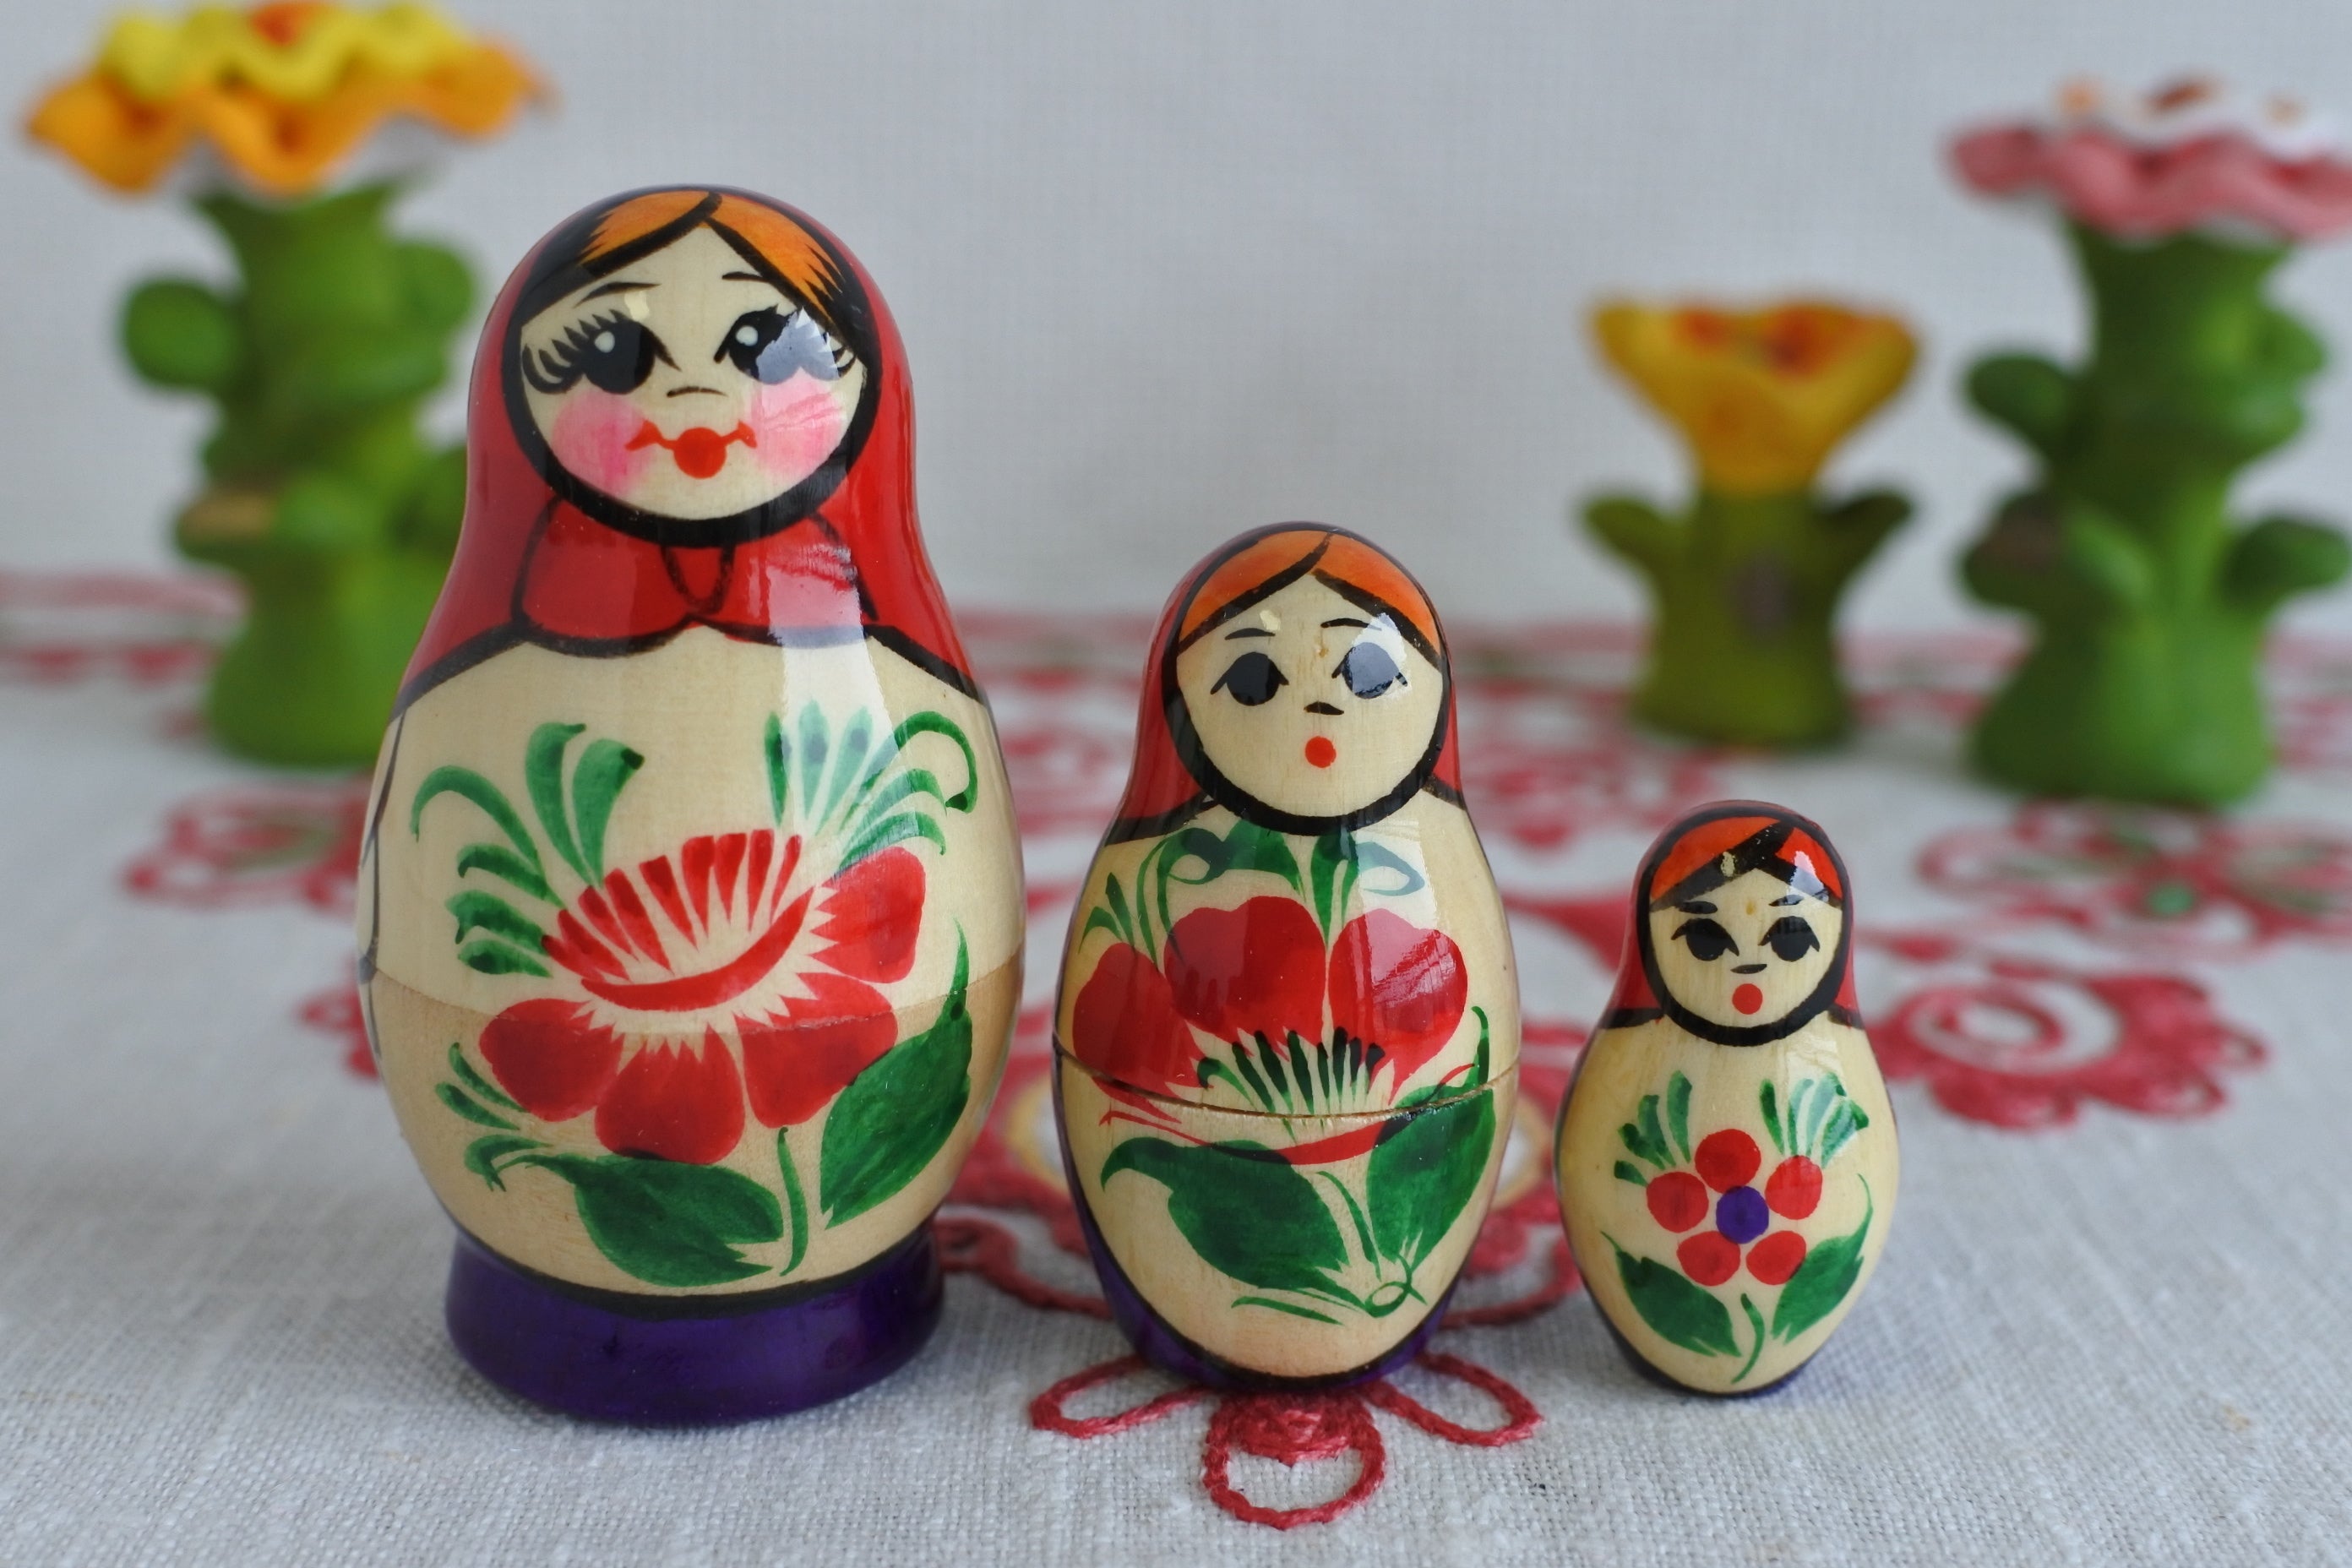 マトリョーシカ ロシアの入れ子人形 ロシア民芸品 ロシア雑貨いりえの